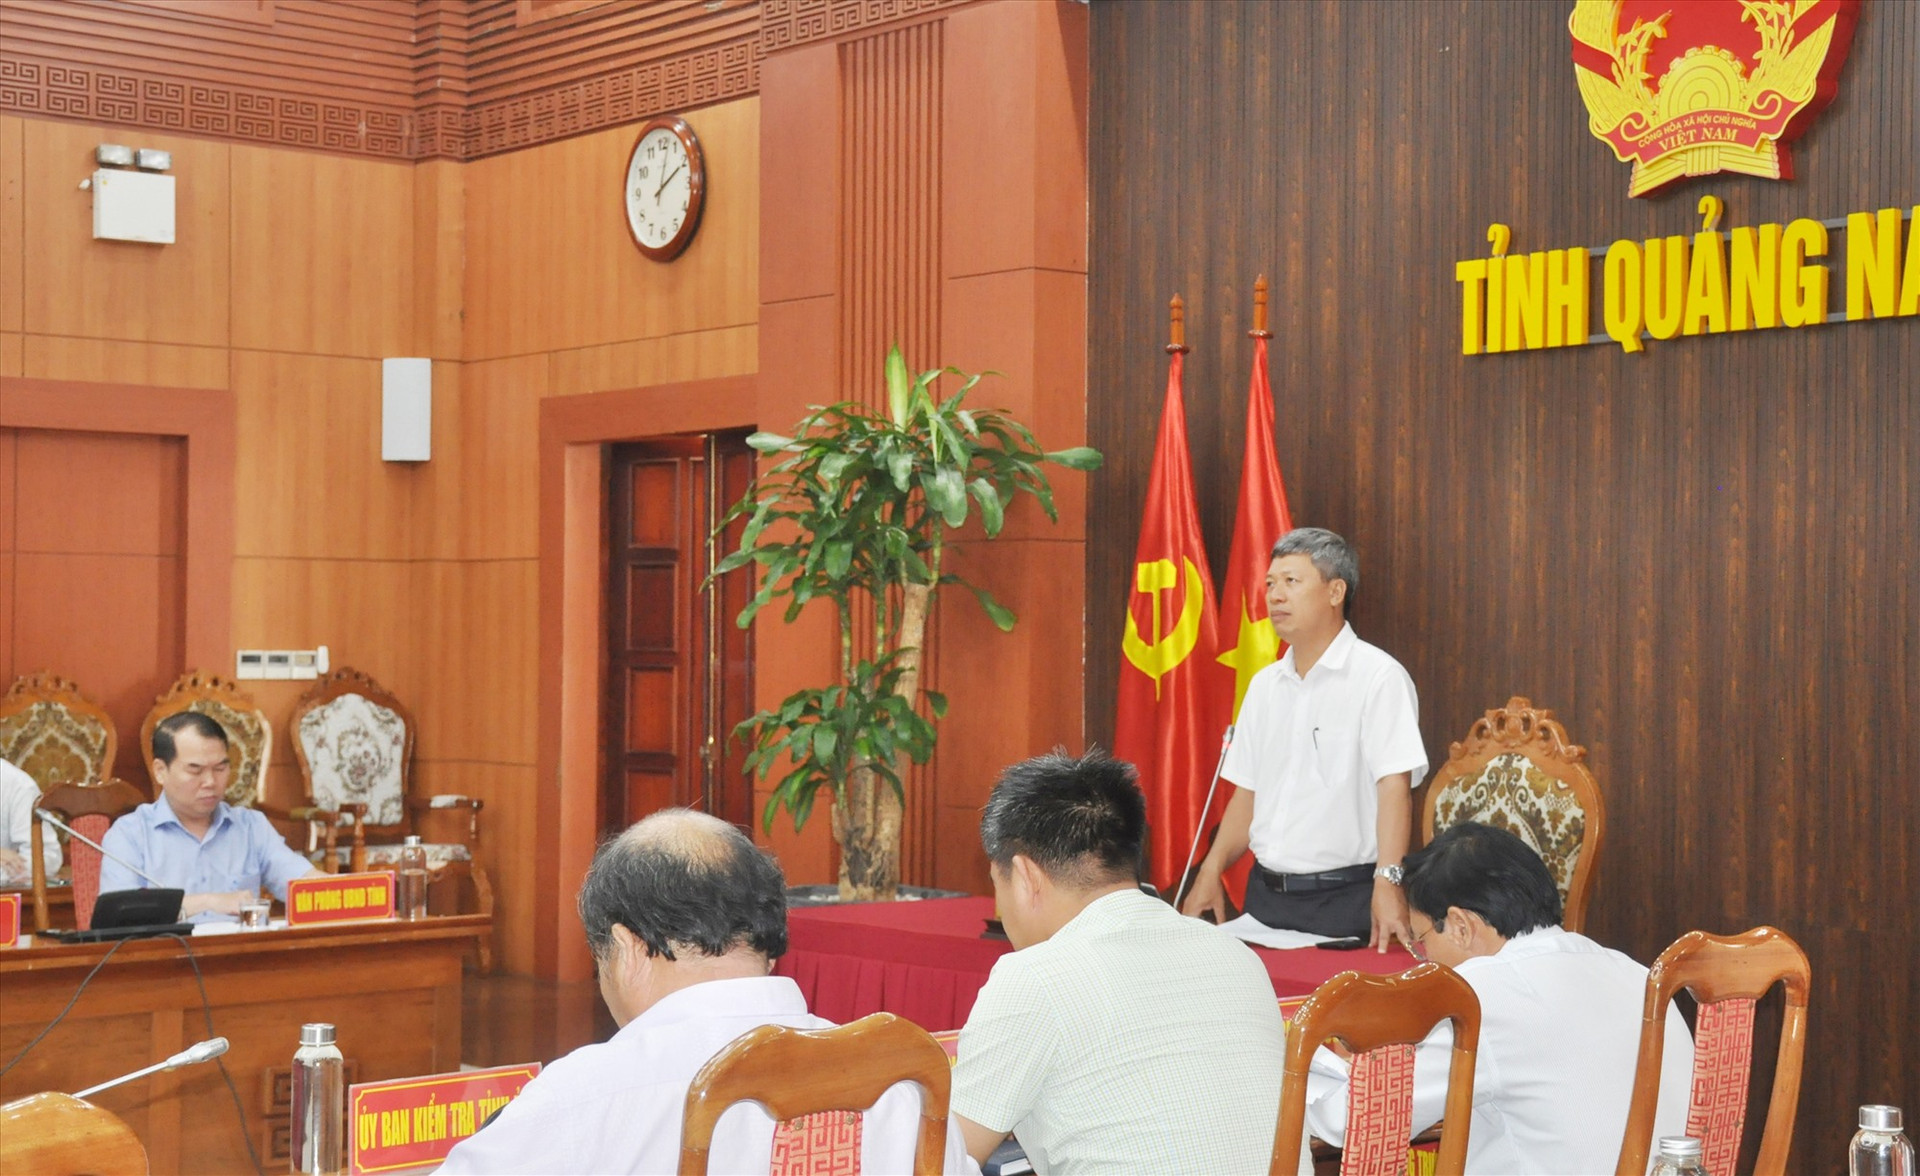 Phó Chủ tịch UBND tỉnh Hồ Quang Bửu chủ trì hội nghị tại điểm cầu tỉnh chiều nay 29/3. Ảnh: N.Đ